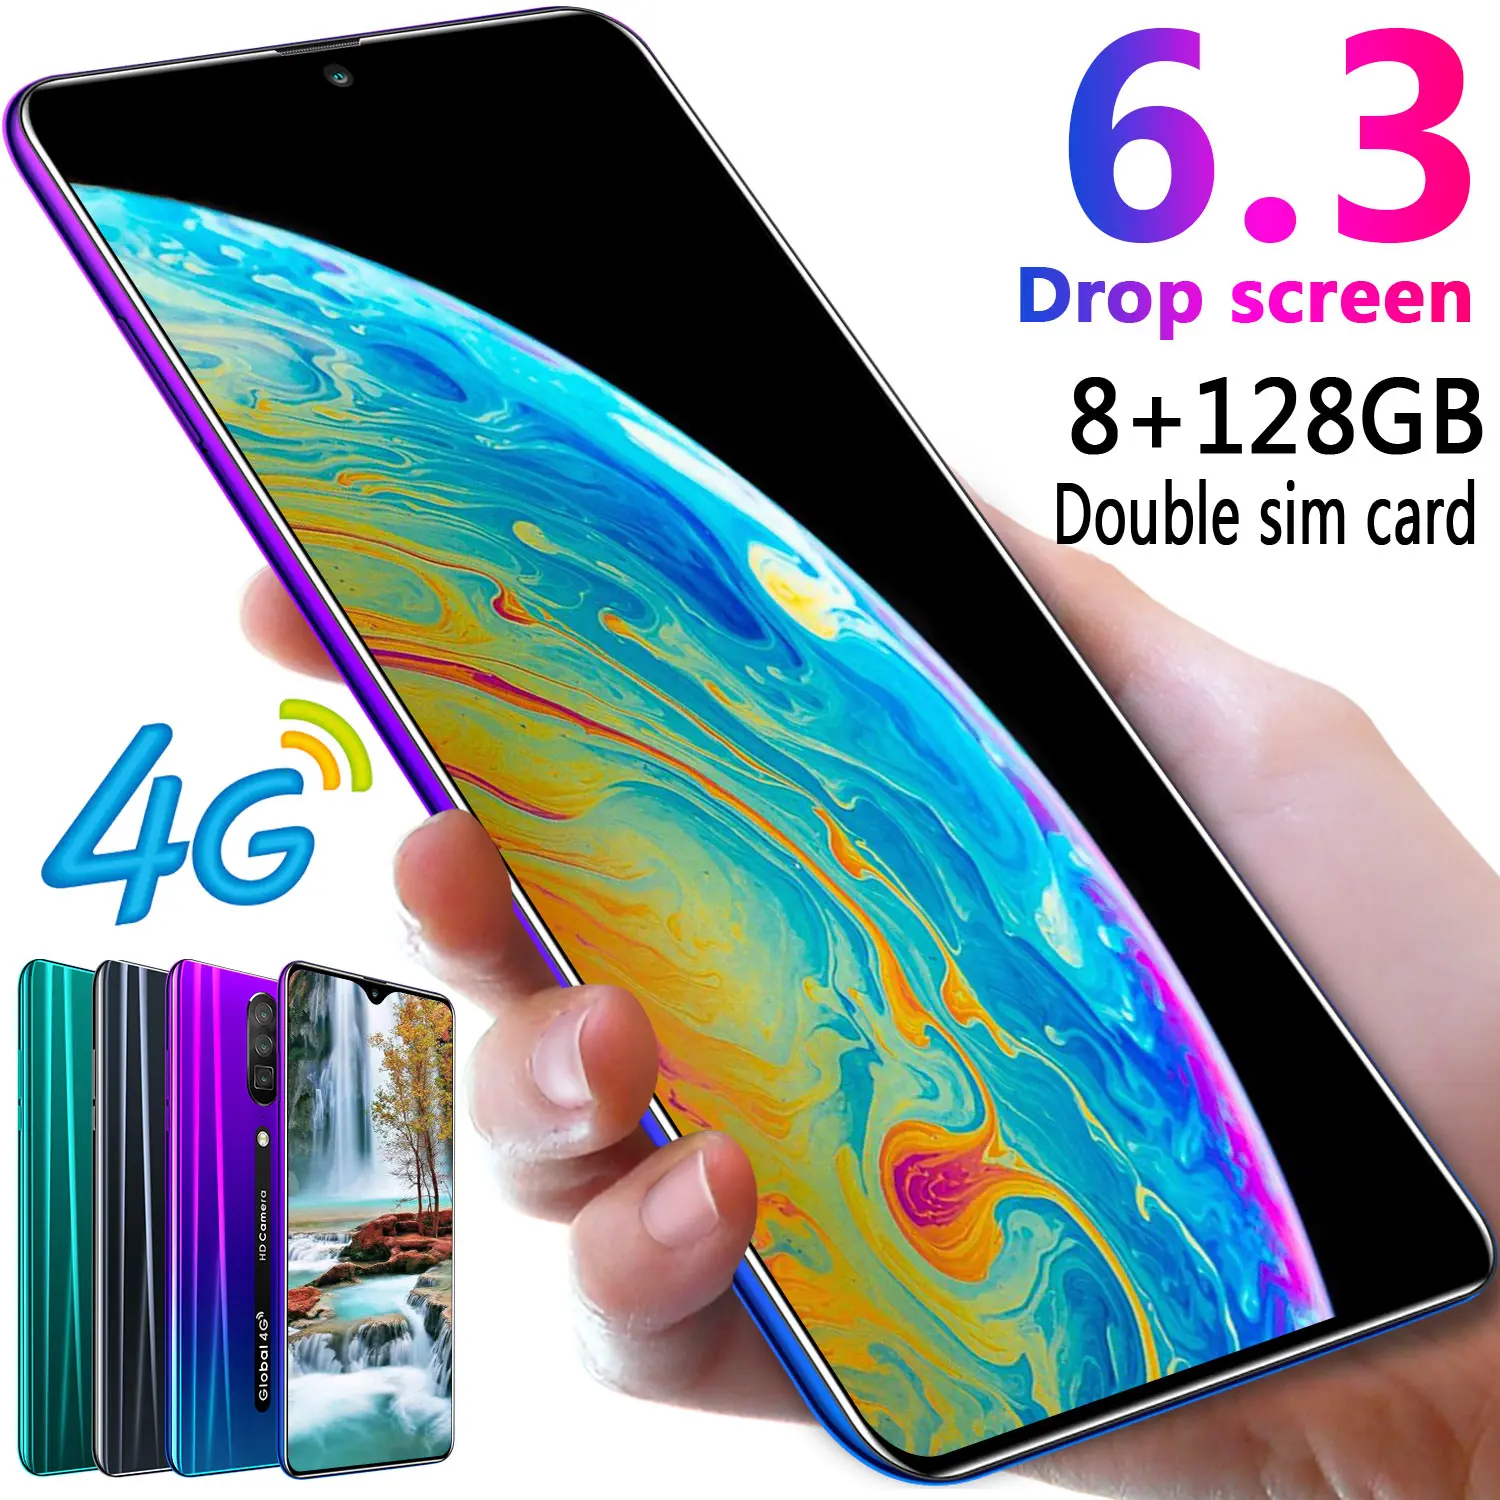 Badidear Rino смартфон Android 4G мобильные телефоны глобальная версия 6,3 дюймов разблокировка двух sim-карт мобильный телефон Капля воды экран